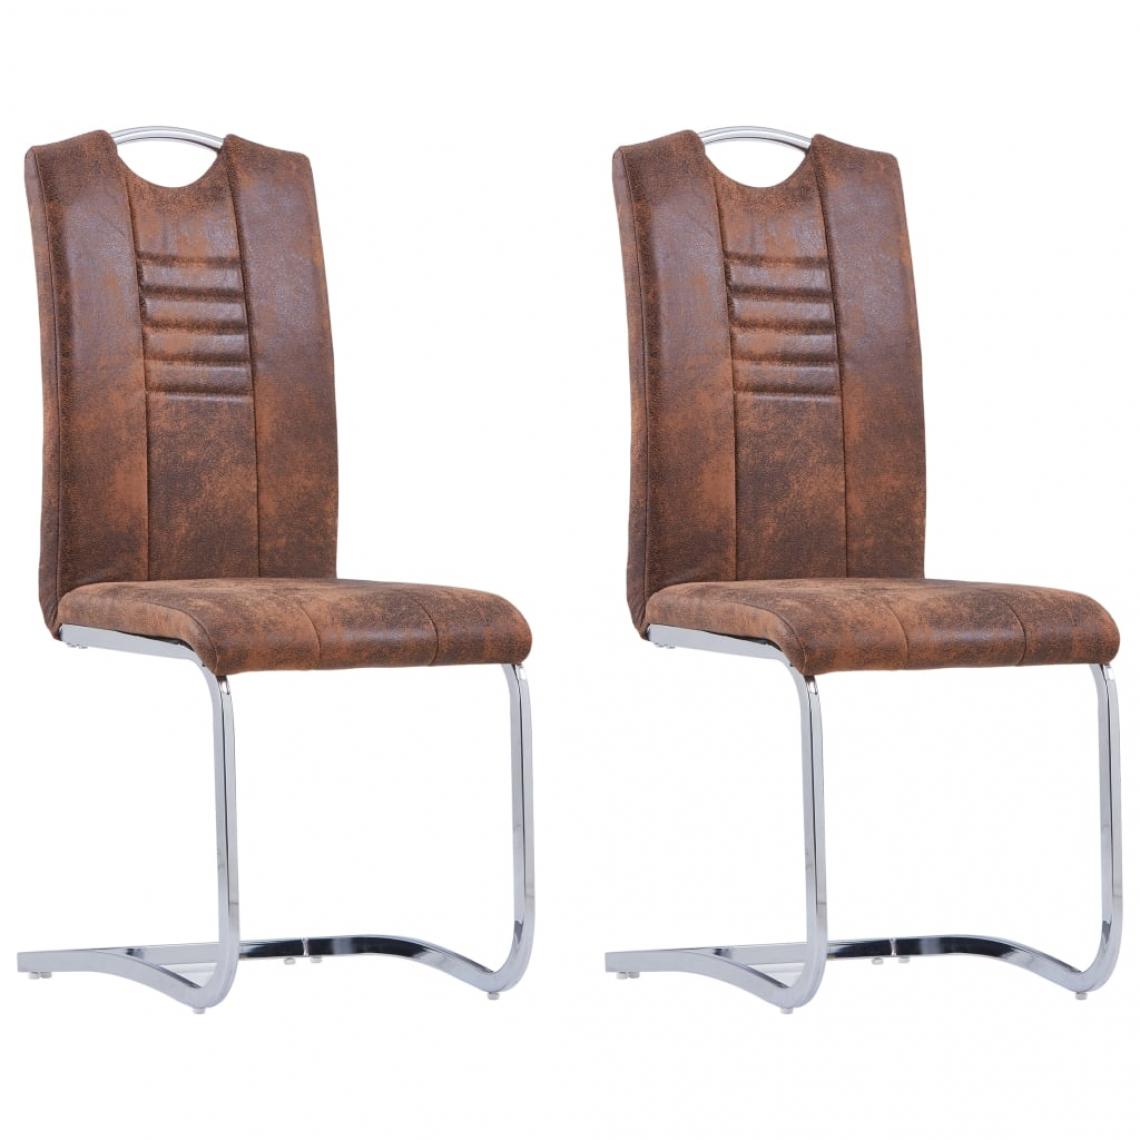 Decoshop26 - Lot de 2 chaises de salle à manger cuisine design moderne similicuir daim marron CDS020737 - Chaises